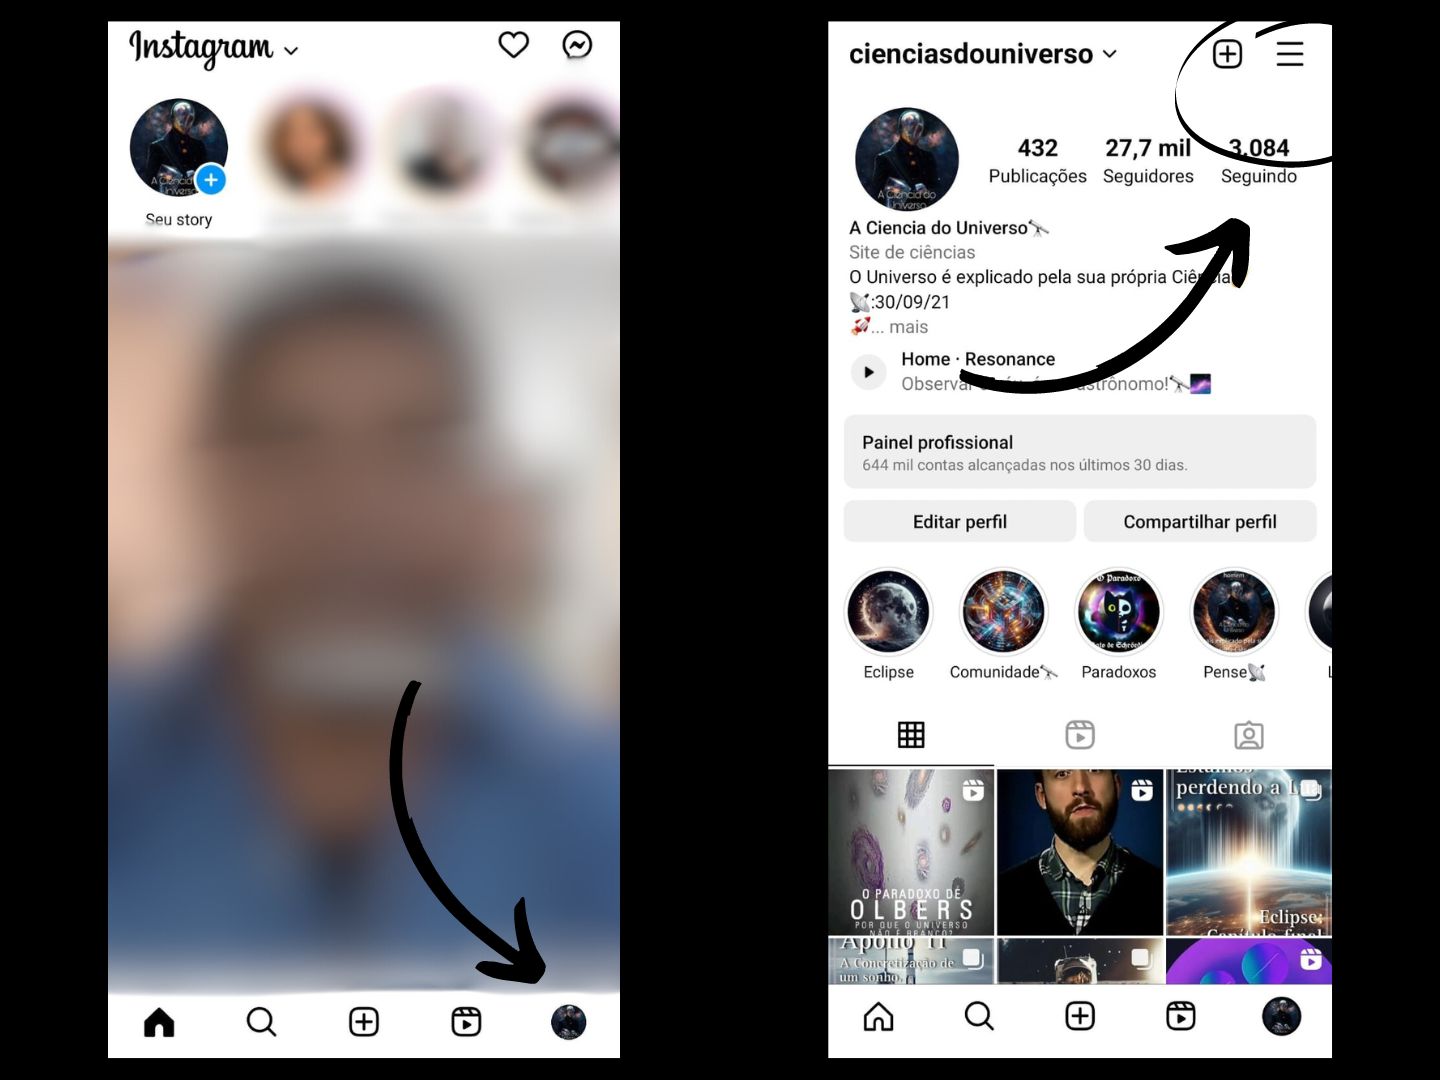 Imagem mostra seta apontando para o perfil e os 3 tracinhos para ver as publicações curtidas n Instagram